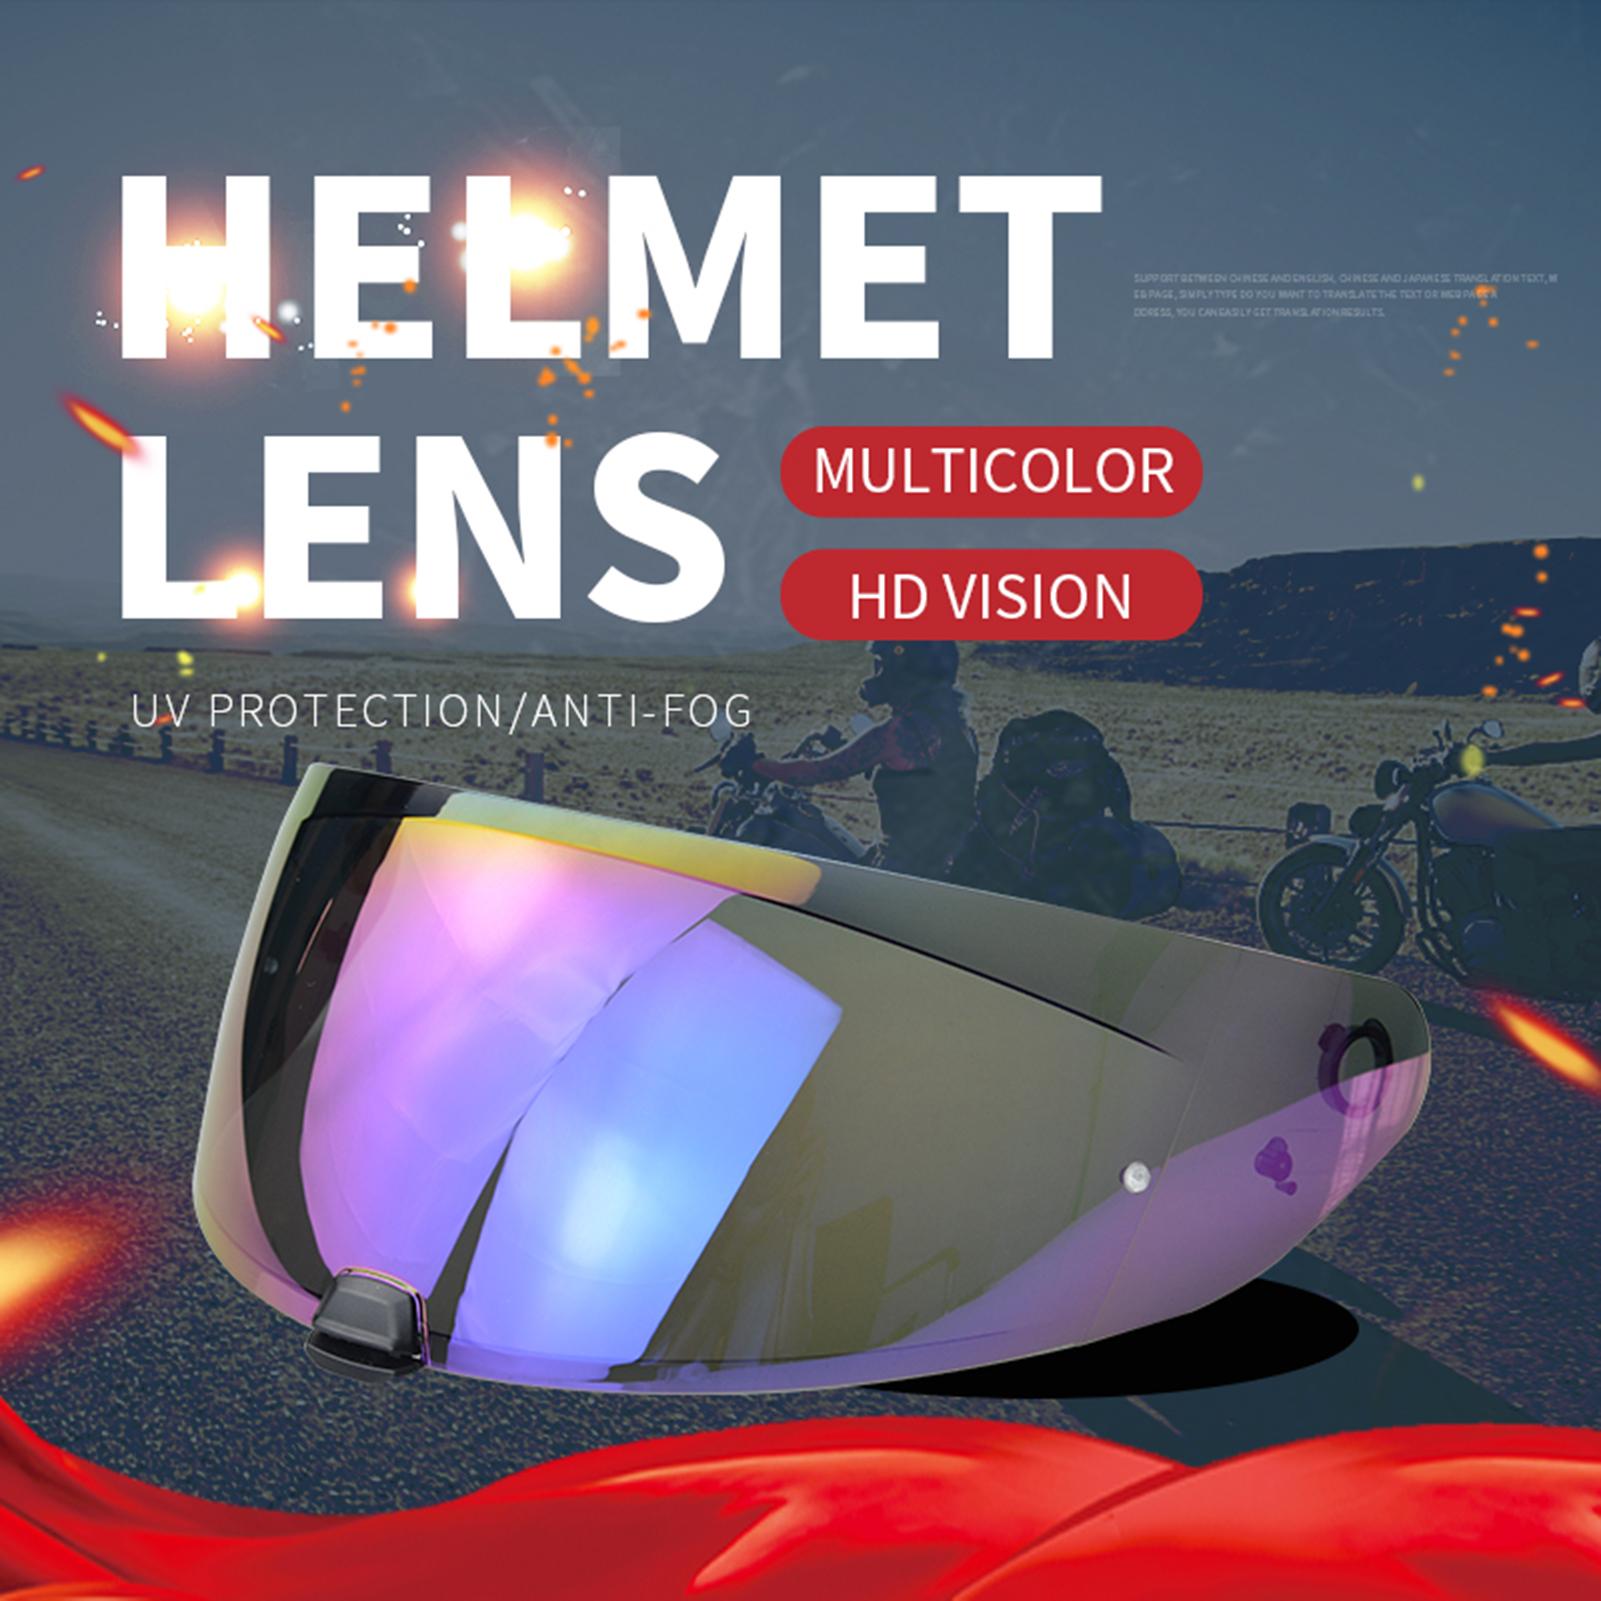 Helmet Visor Replacement for HJC i70 i10 Helmet Motorcycle Wind Shield Helmet Lens